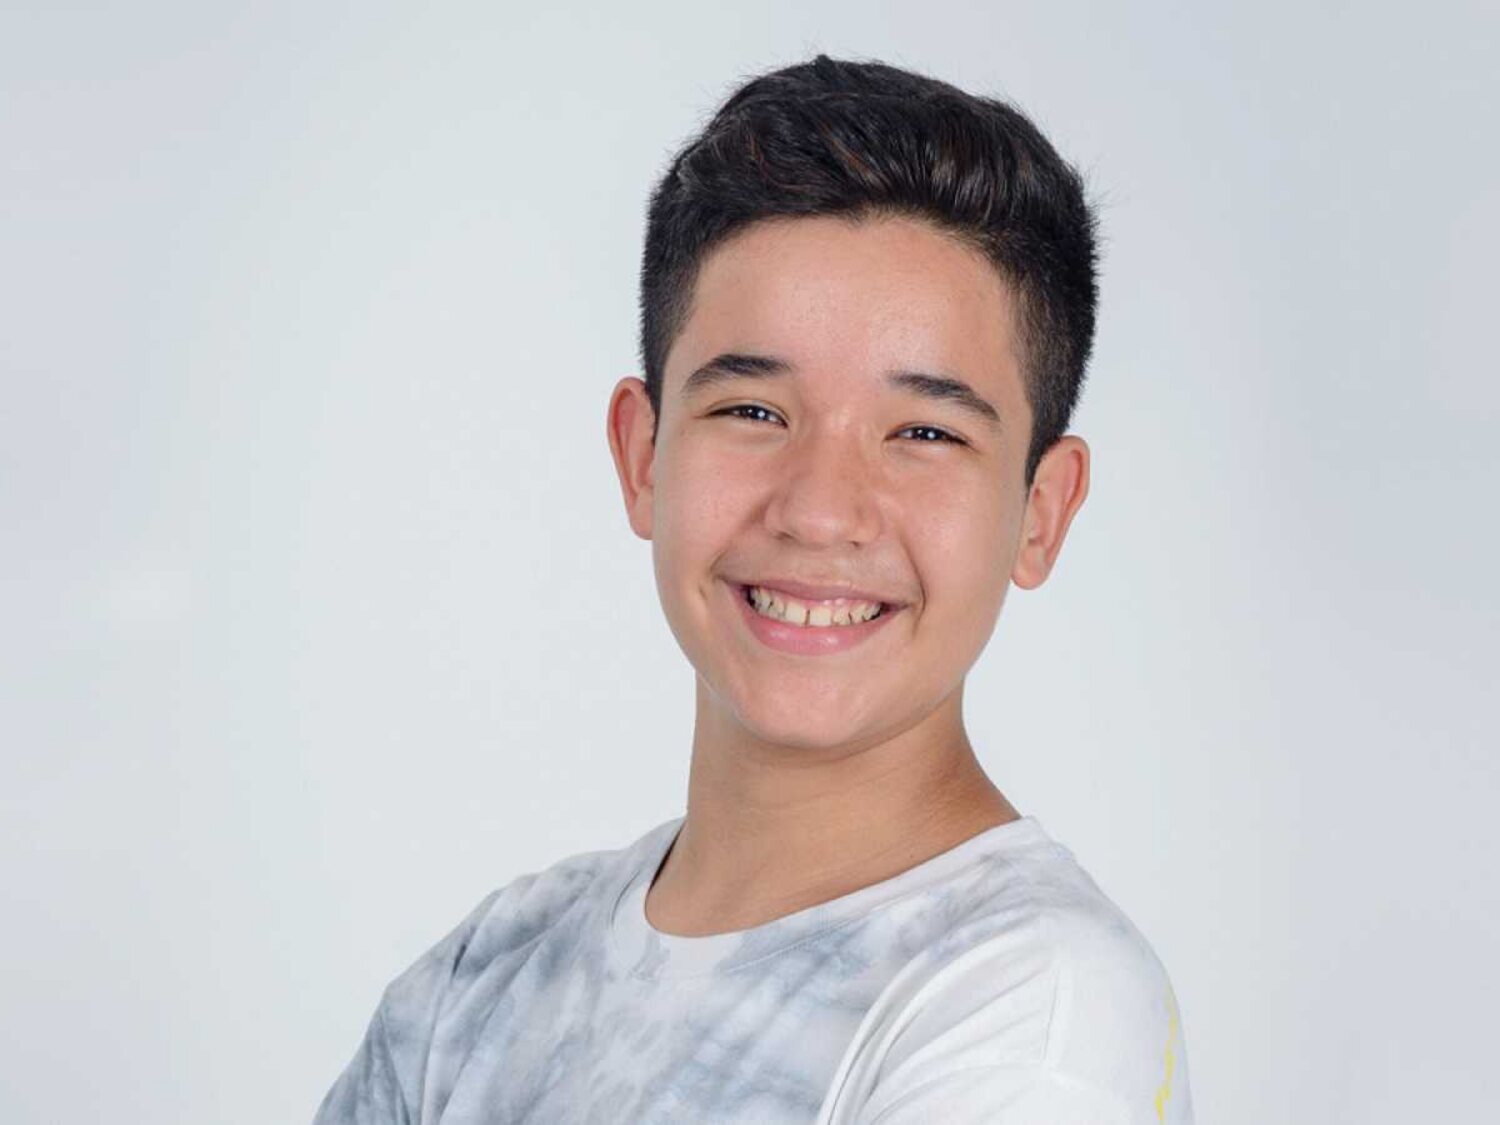 Levi Díaz, ganador de 'La Voz Kids', representante de España en Eurovisión Junior 2021